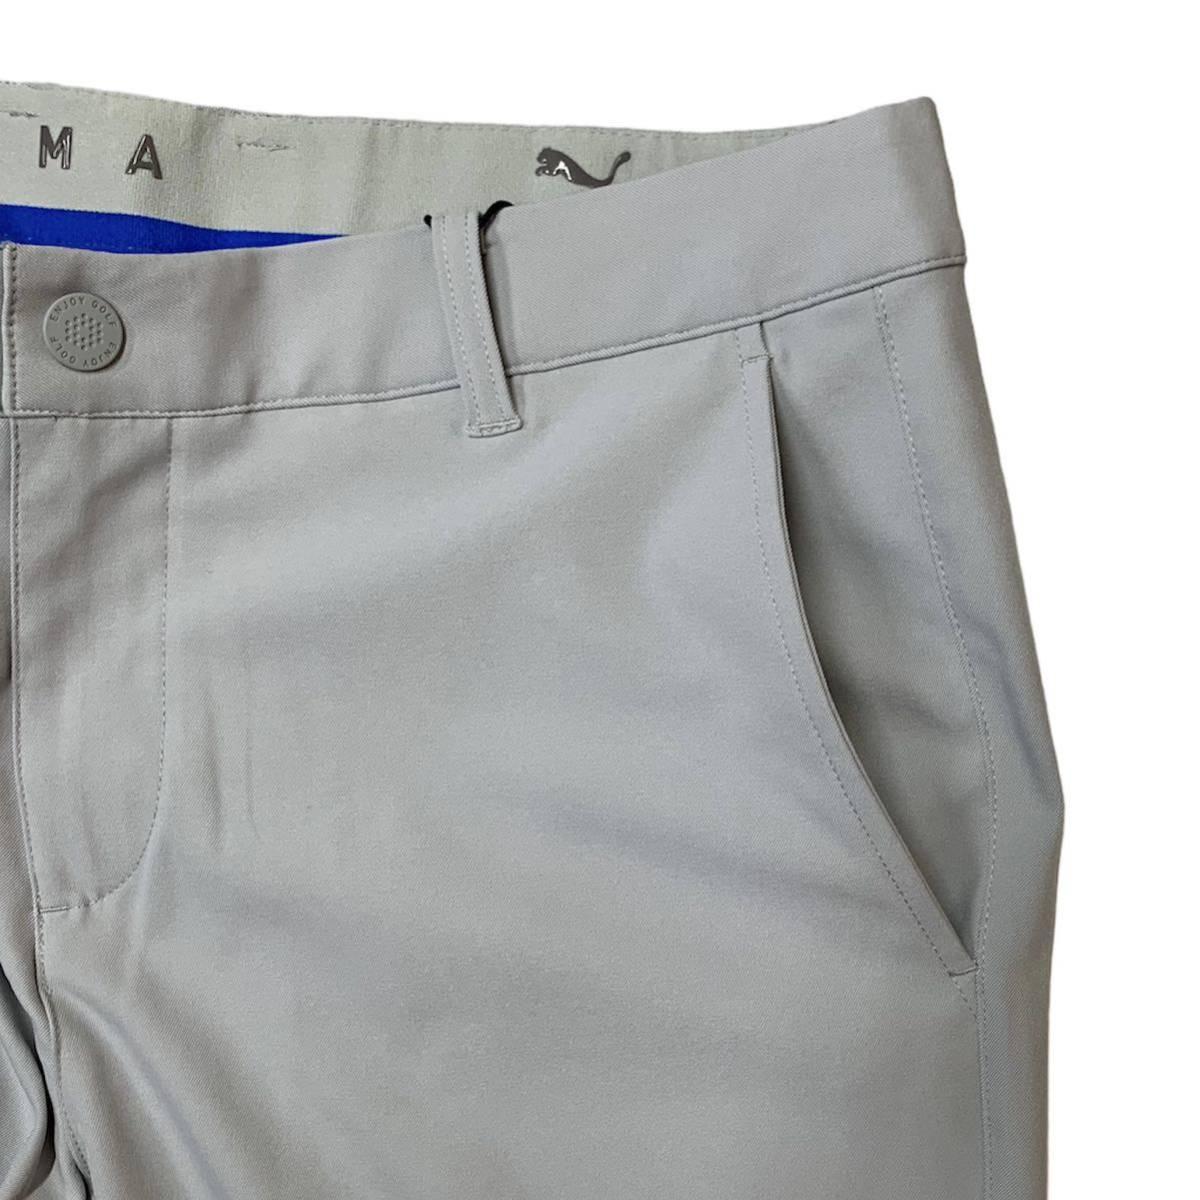  Puma Golf мужской стрейч брюки-джоггеры L размер 82cm обычная цена 9900 иен светло-серый GOLF